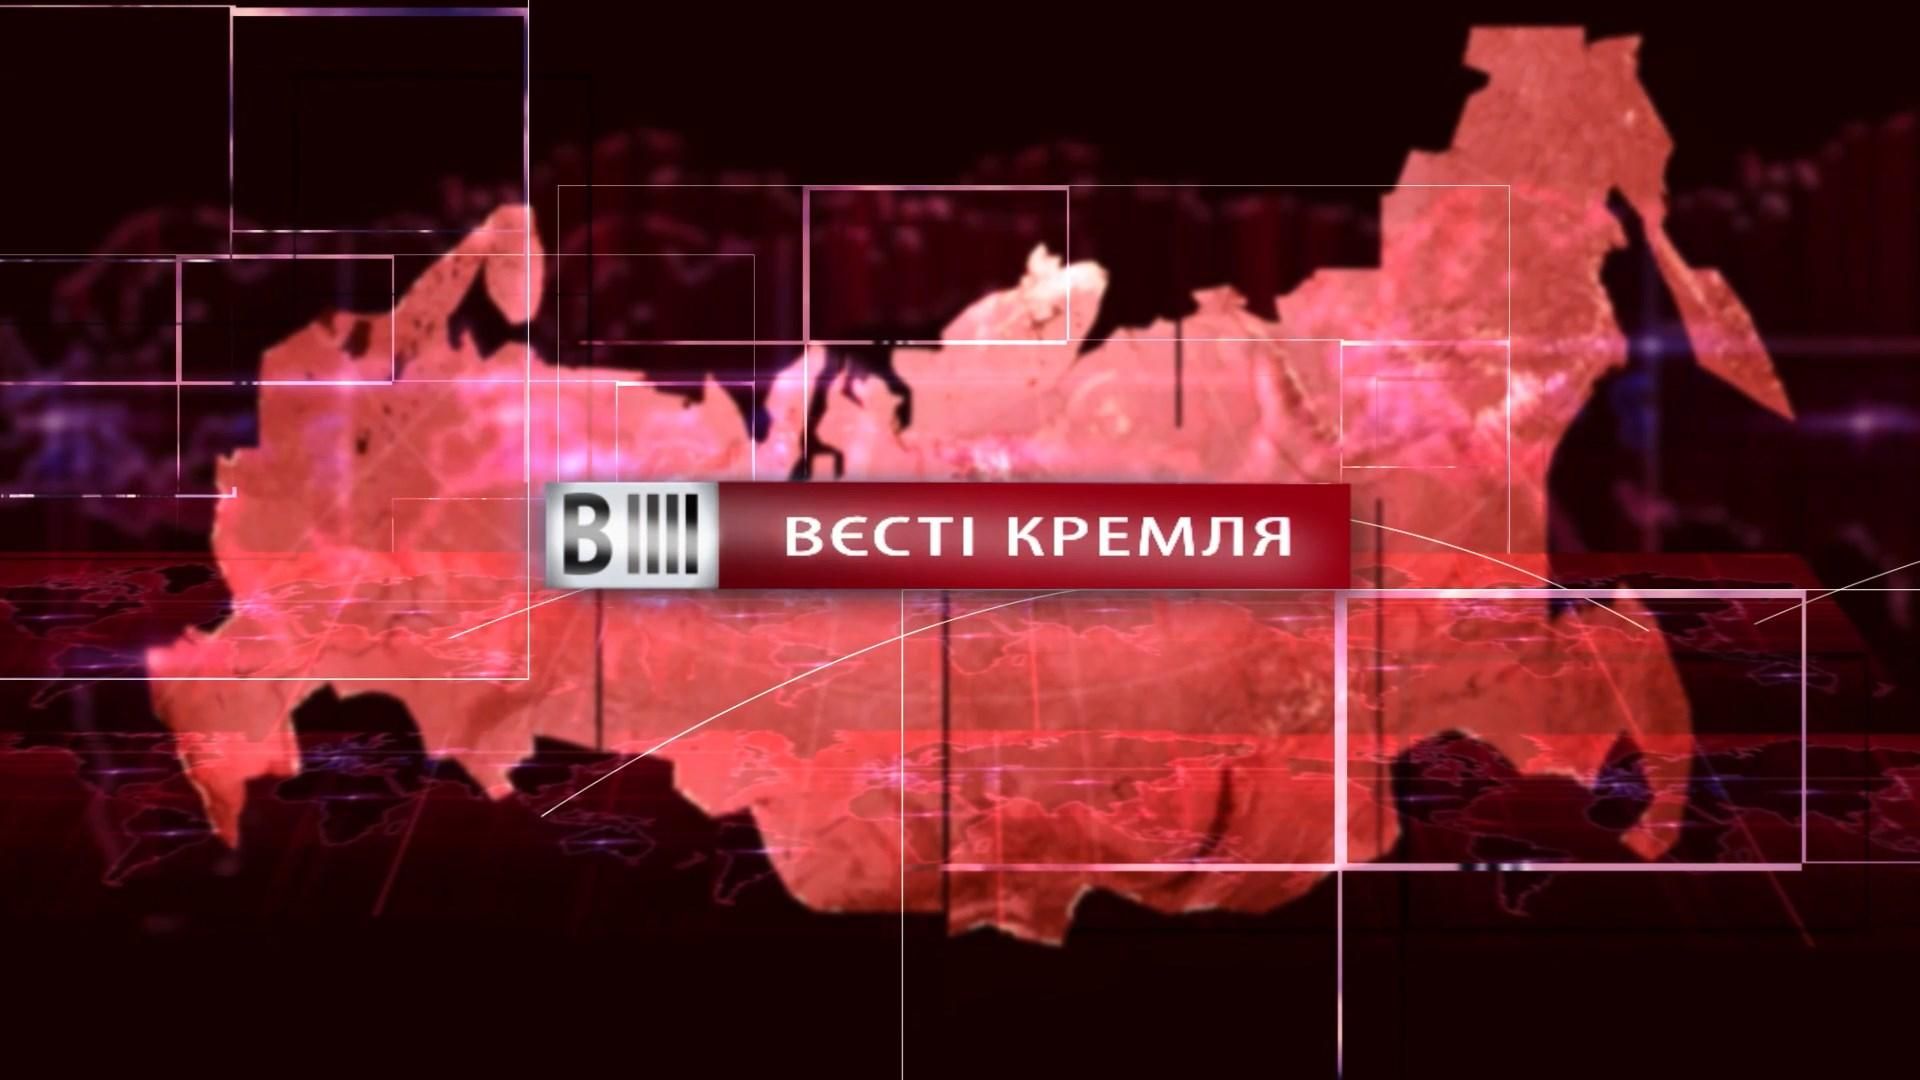 Смотрите "Вести Кремля". Кирилл в вакууме. Россияне против распада империй